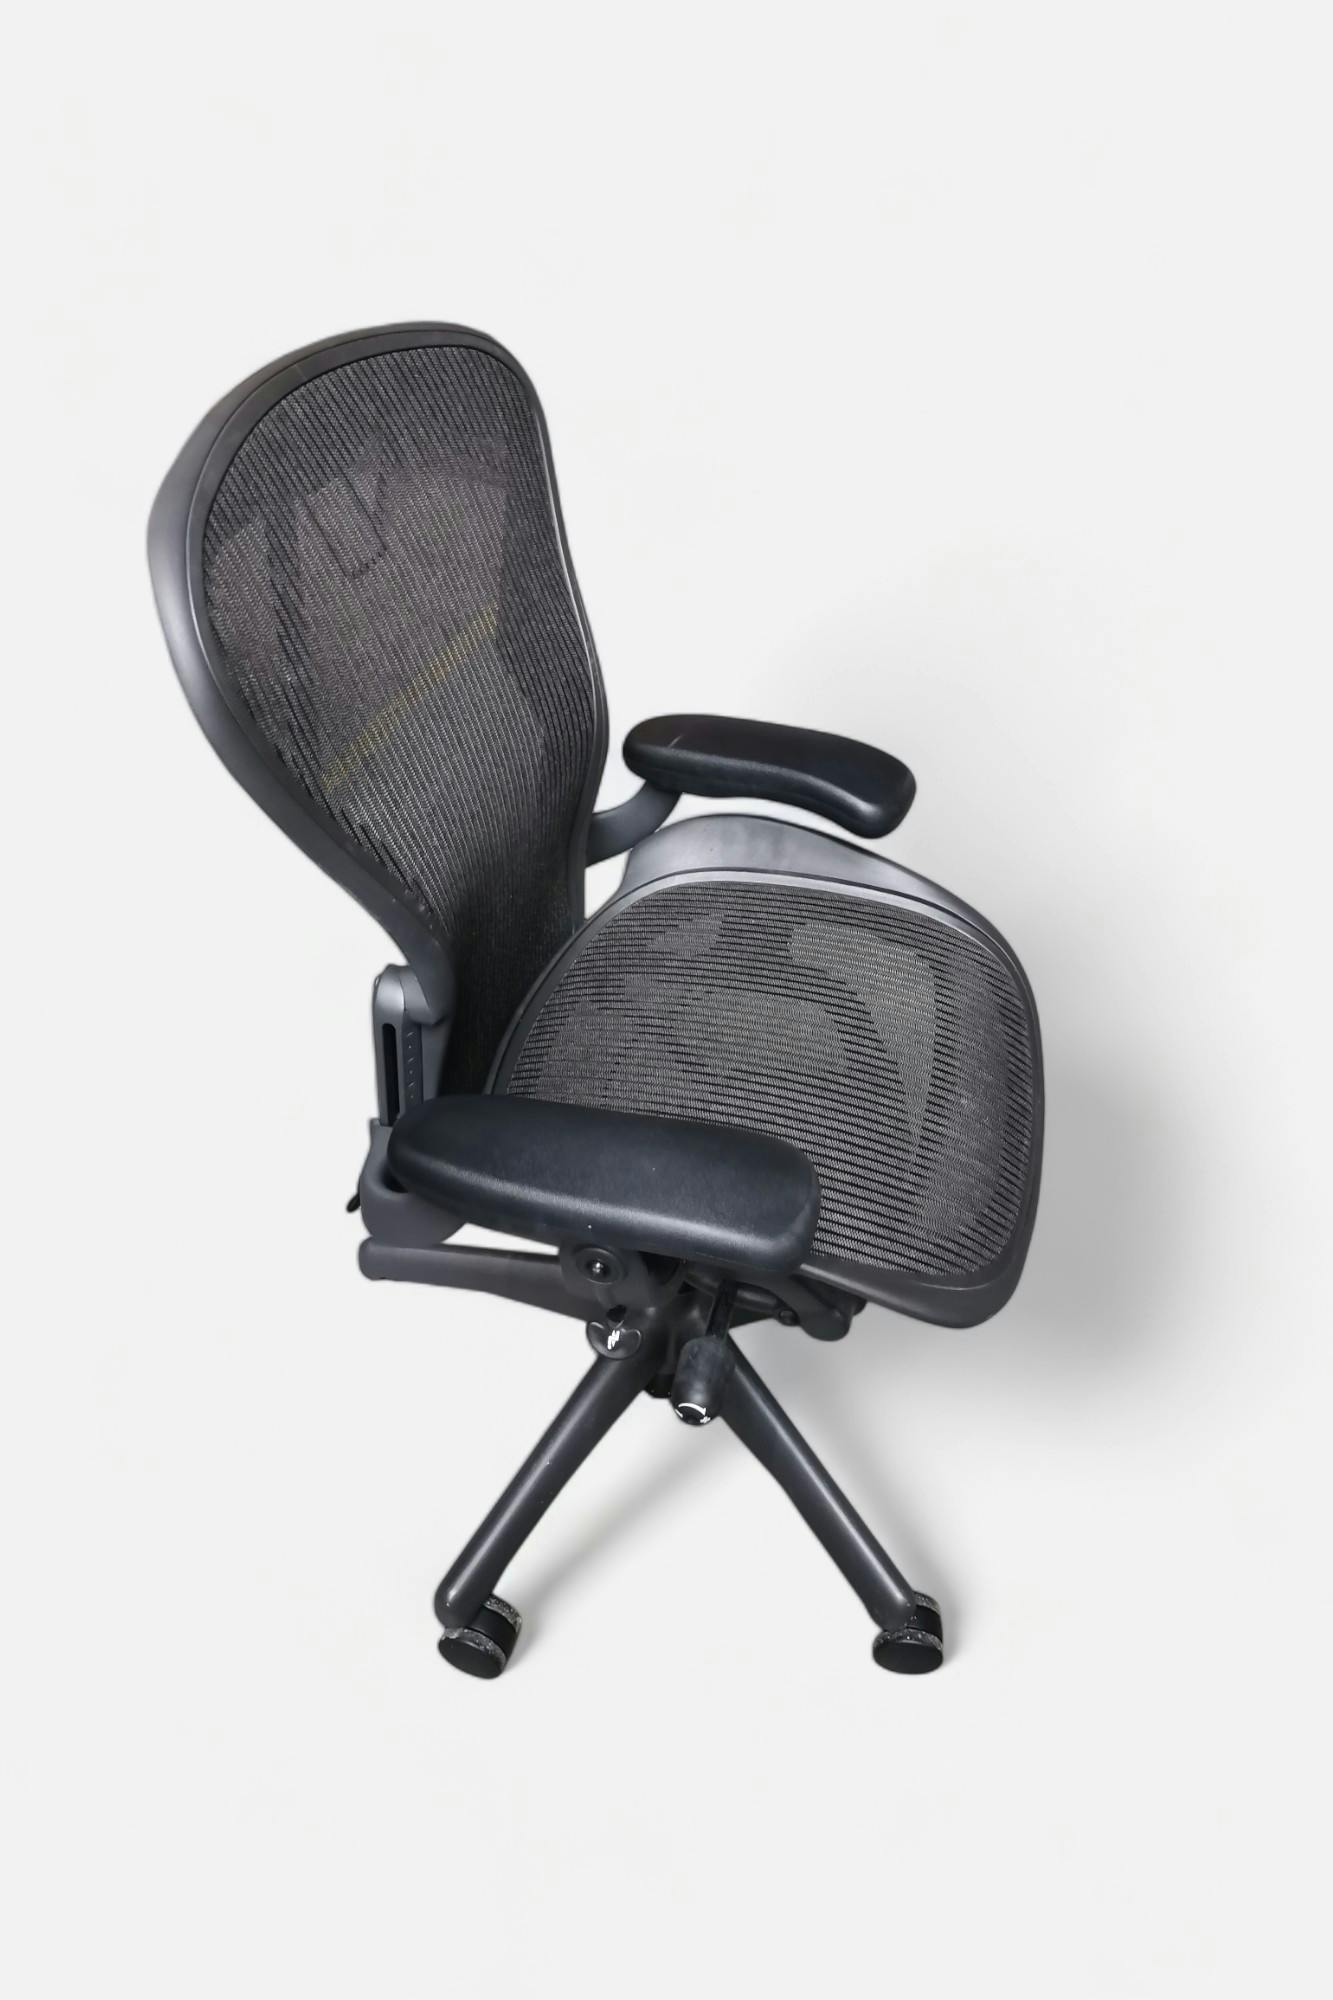 Herman Miller Dark Grey / Black office chair - Medium "B" Size - Relieve Furniture